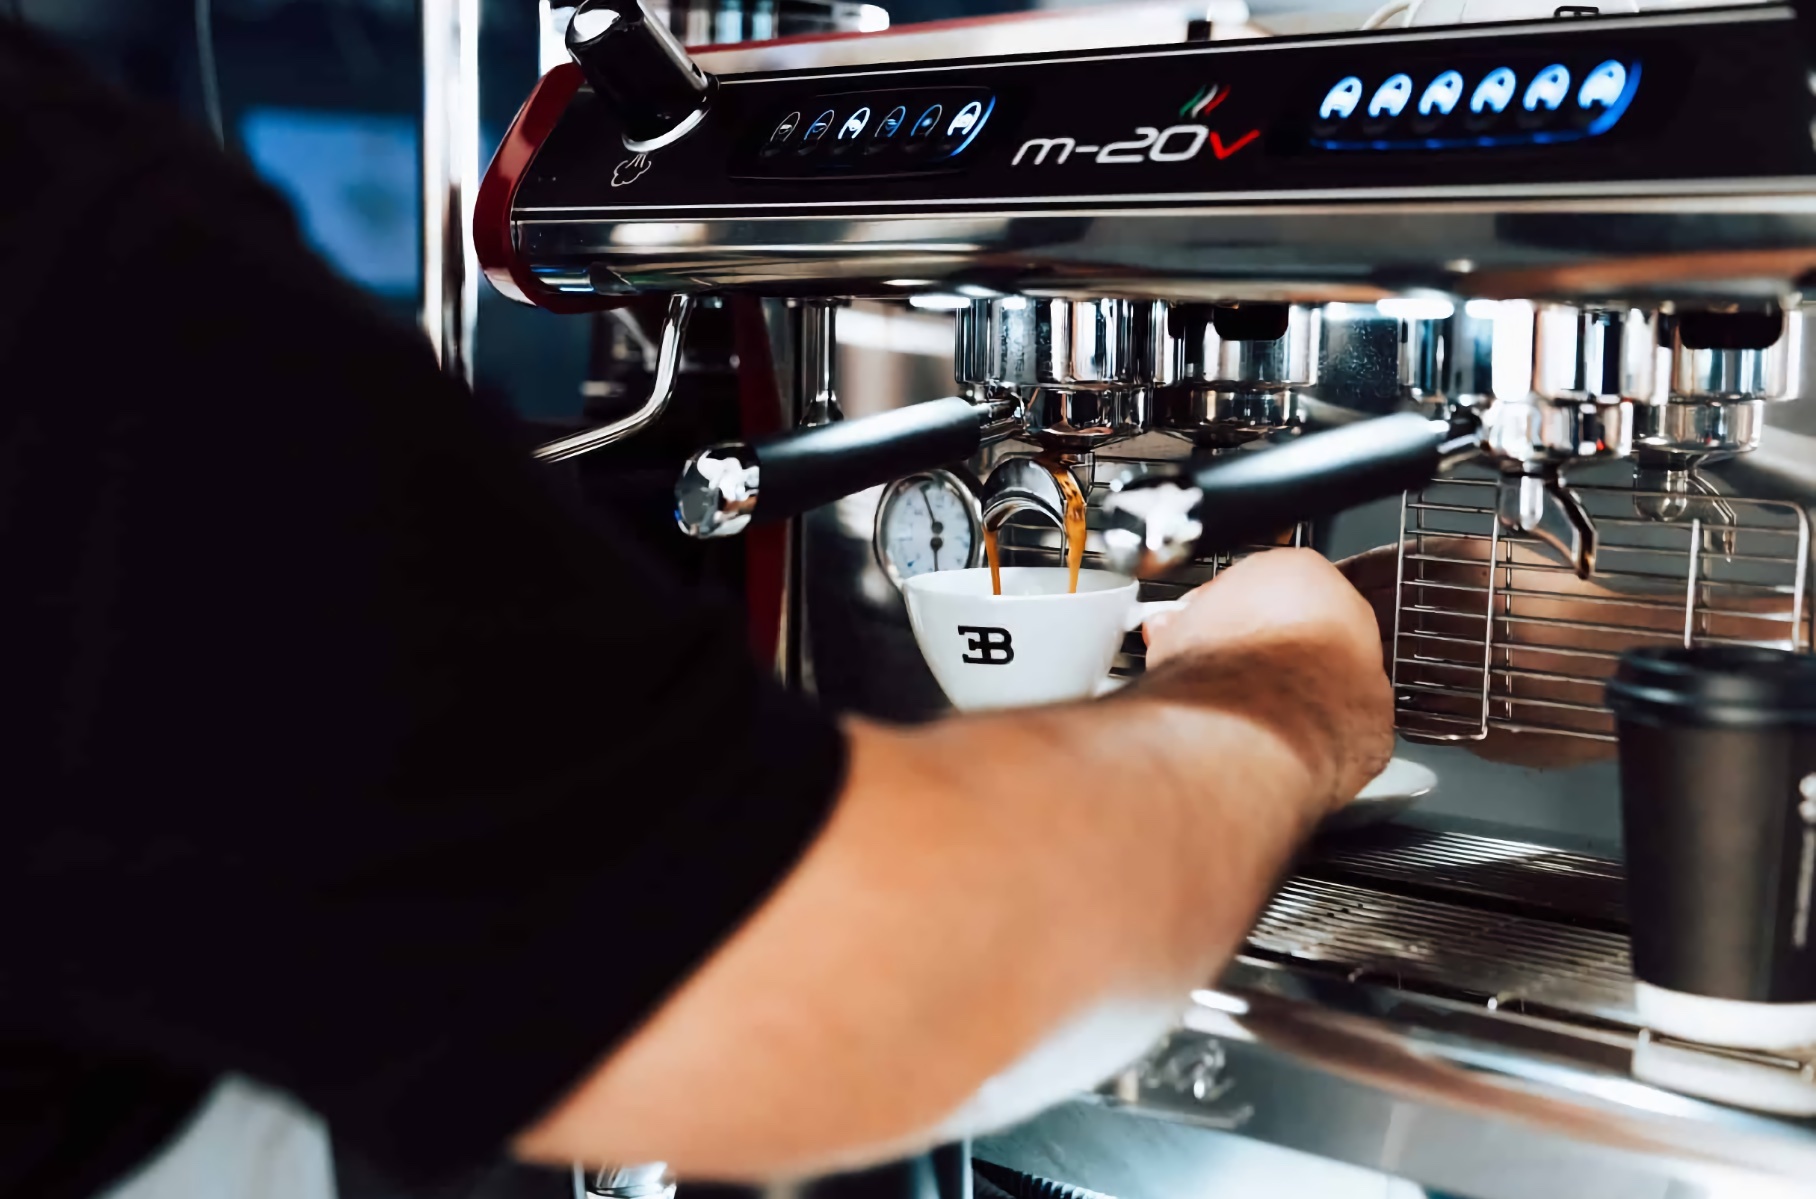 Bugatti начала продавать чашку кофе за 3500 рублей